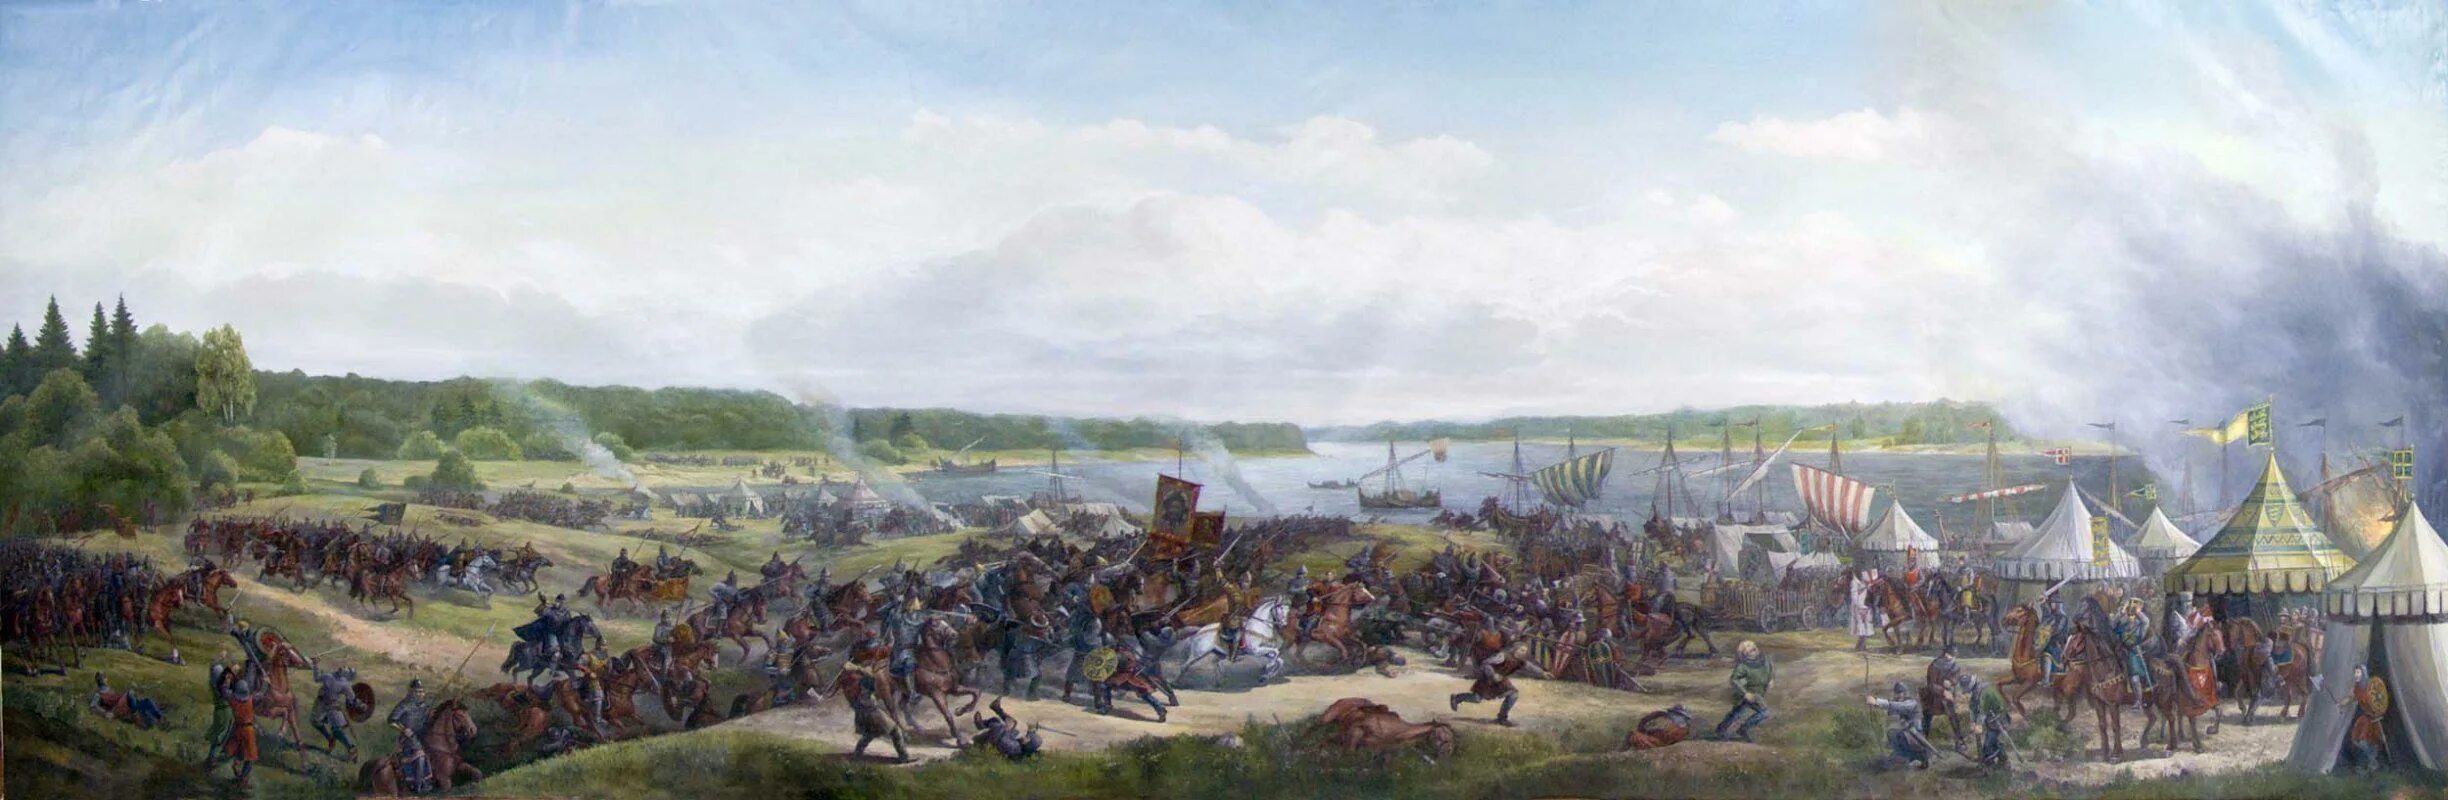 Правитель швеции участник невской битвы. Невская битва 1240. Битва на Неве 1240.